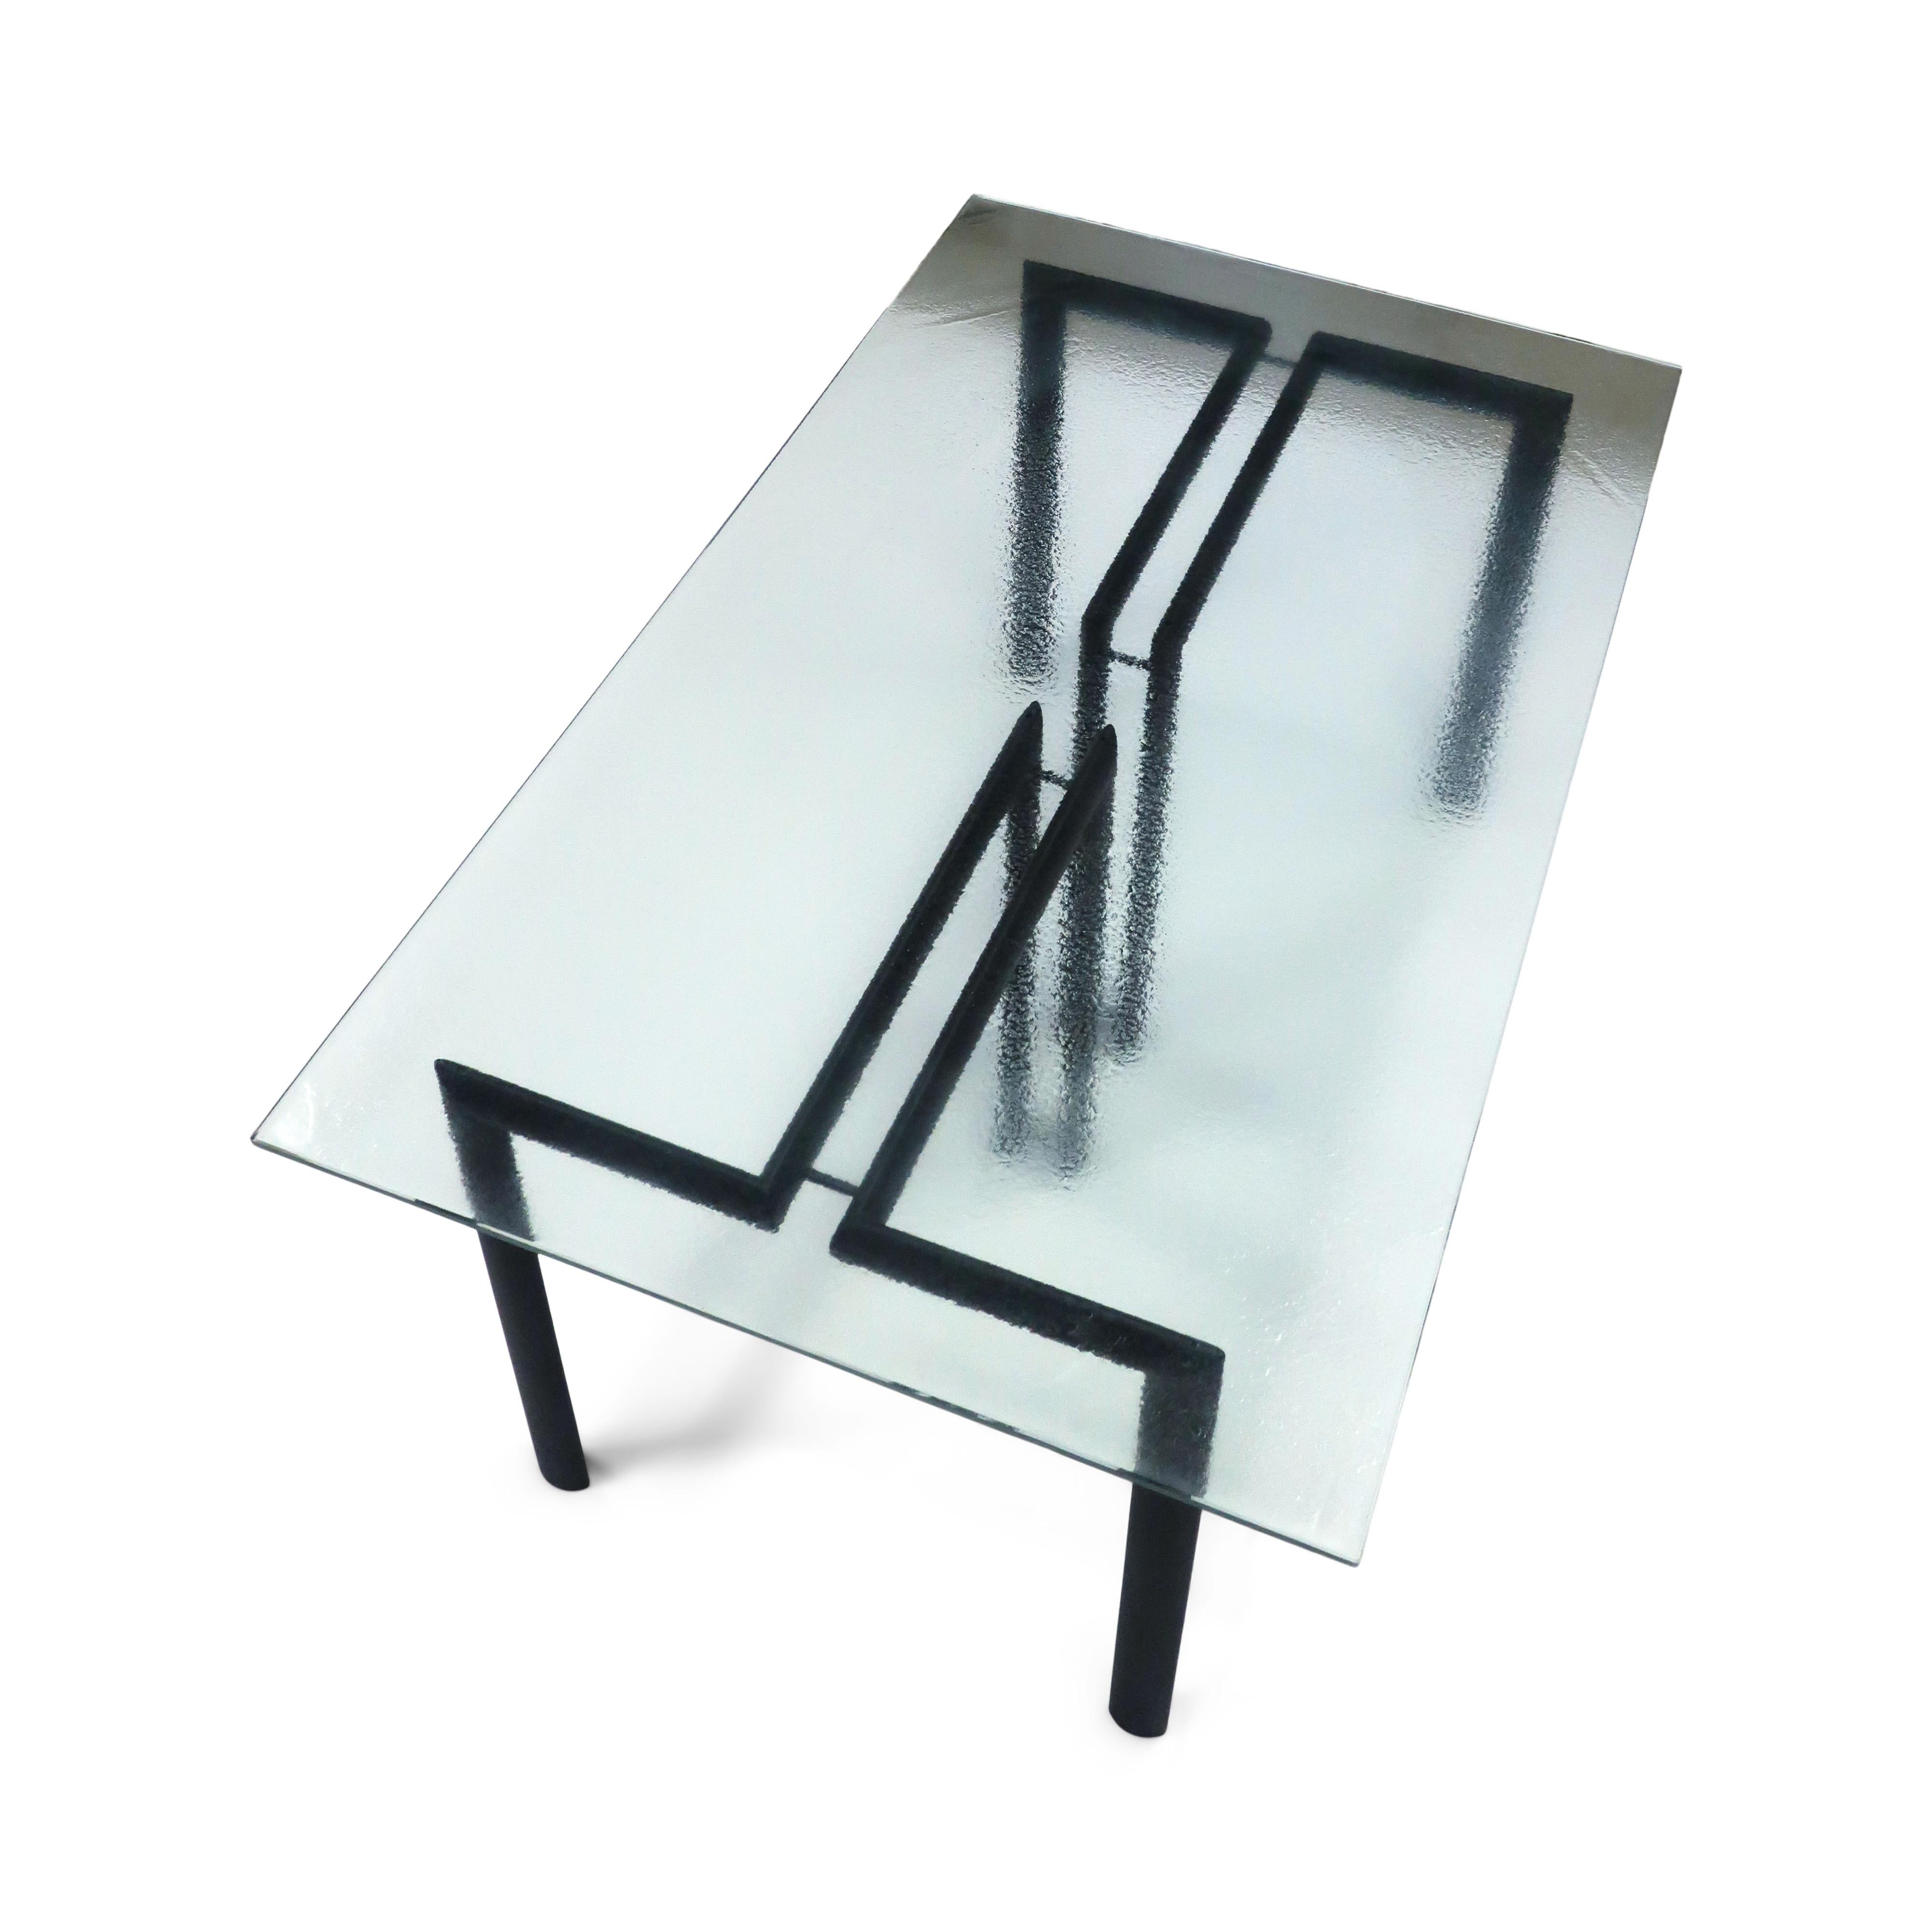 Ein schöner postmoderner italienischer Tisch aus den 1980er Jahren, entworfen von Giorgio Cattelan für Cidue.  Die Basis des Tisches besteht aus zwei mattschwarz emaillierten, T-förmigen Metallteilen.  Das zweiteilige Untergestell ermöglicht die